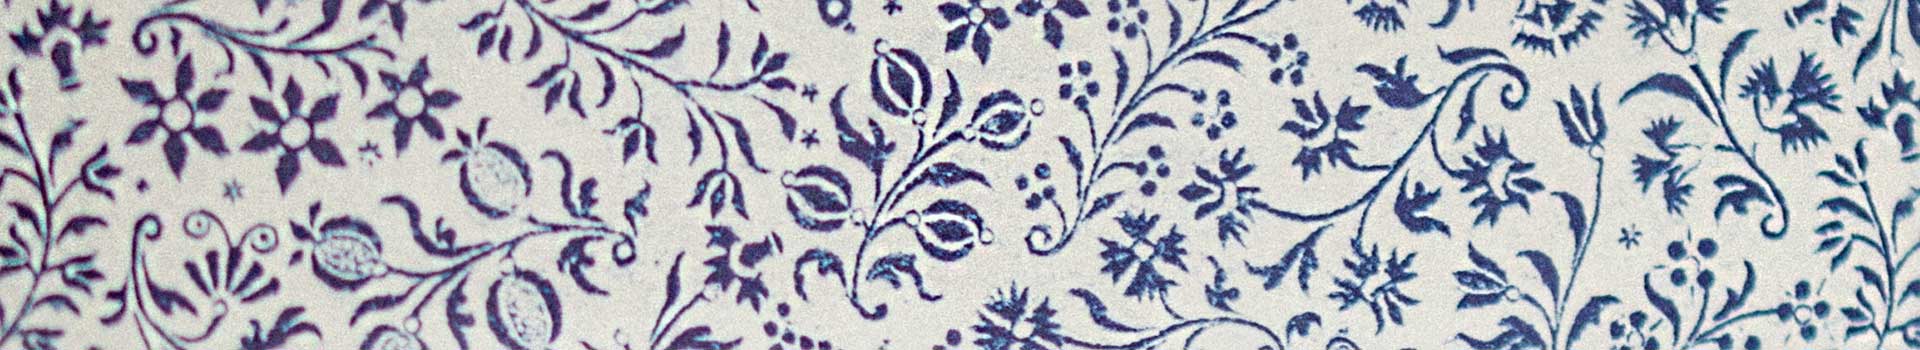 papel italiano de estampado de flores azules para forrar cajas decorativas by Agnes Bloom